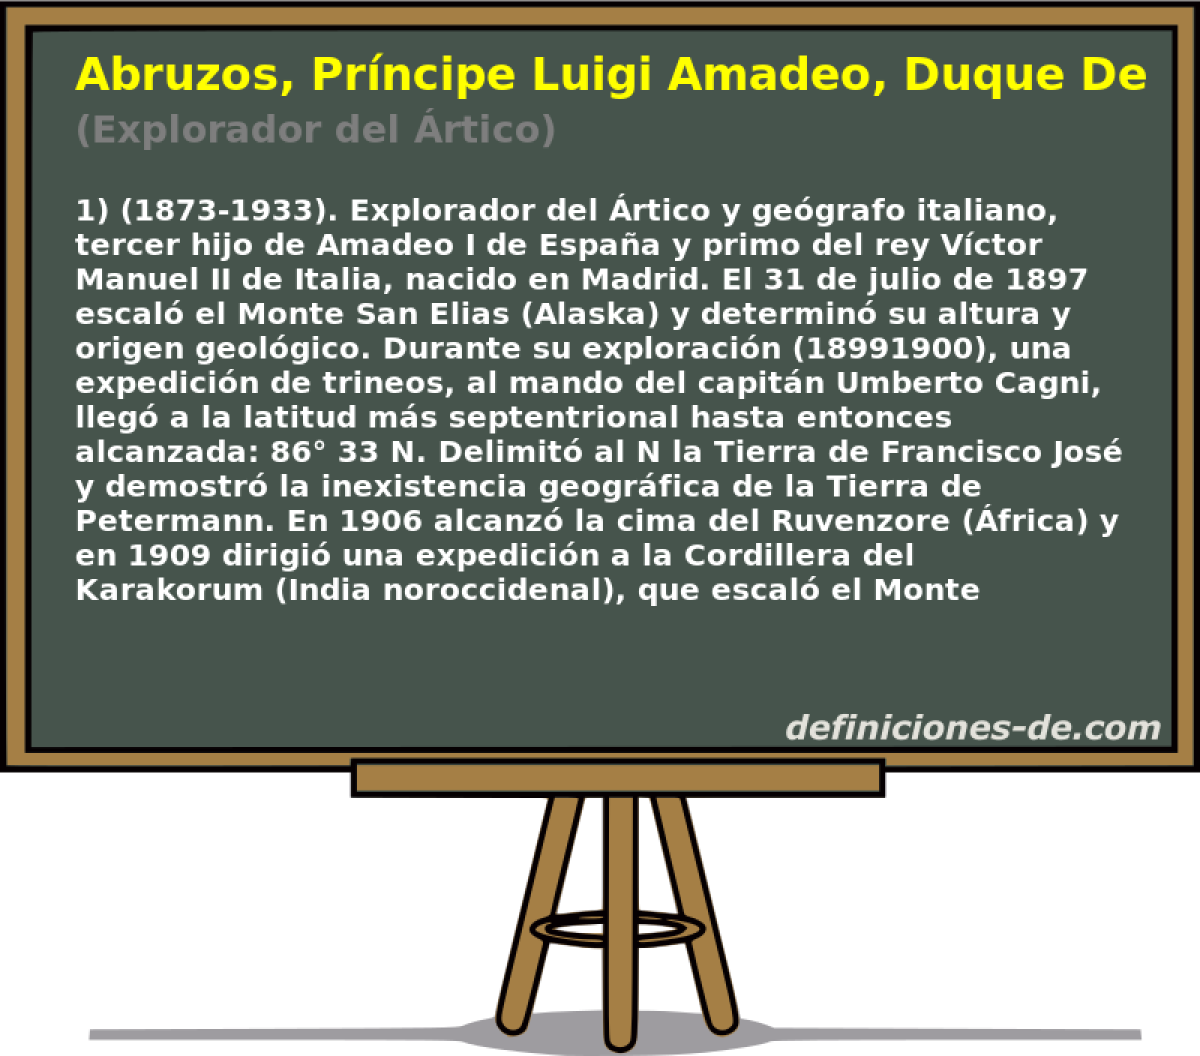 Abruzos, Prncipe Luigi Amadeo, Duque De Los (Explorador del rtico)